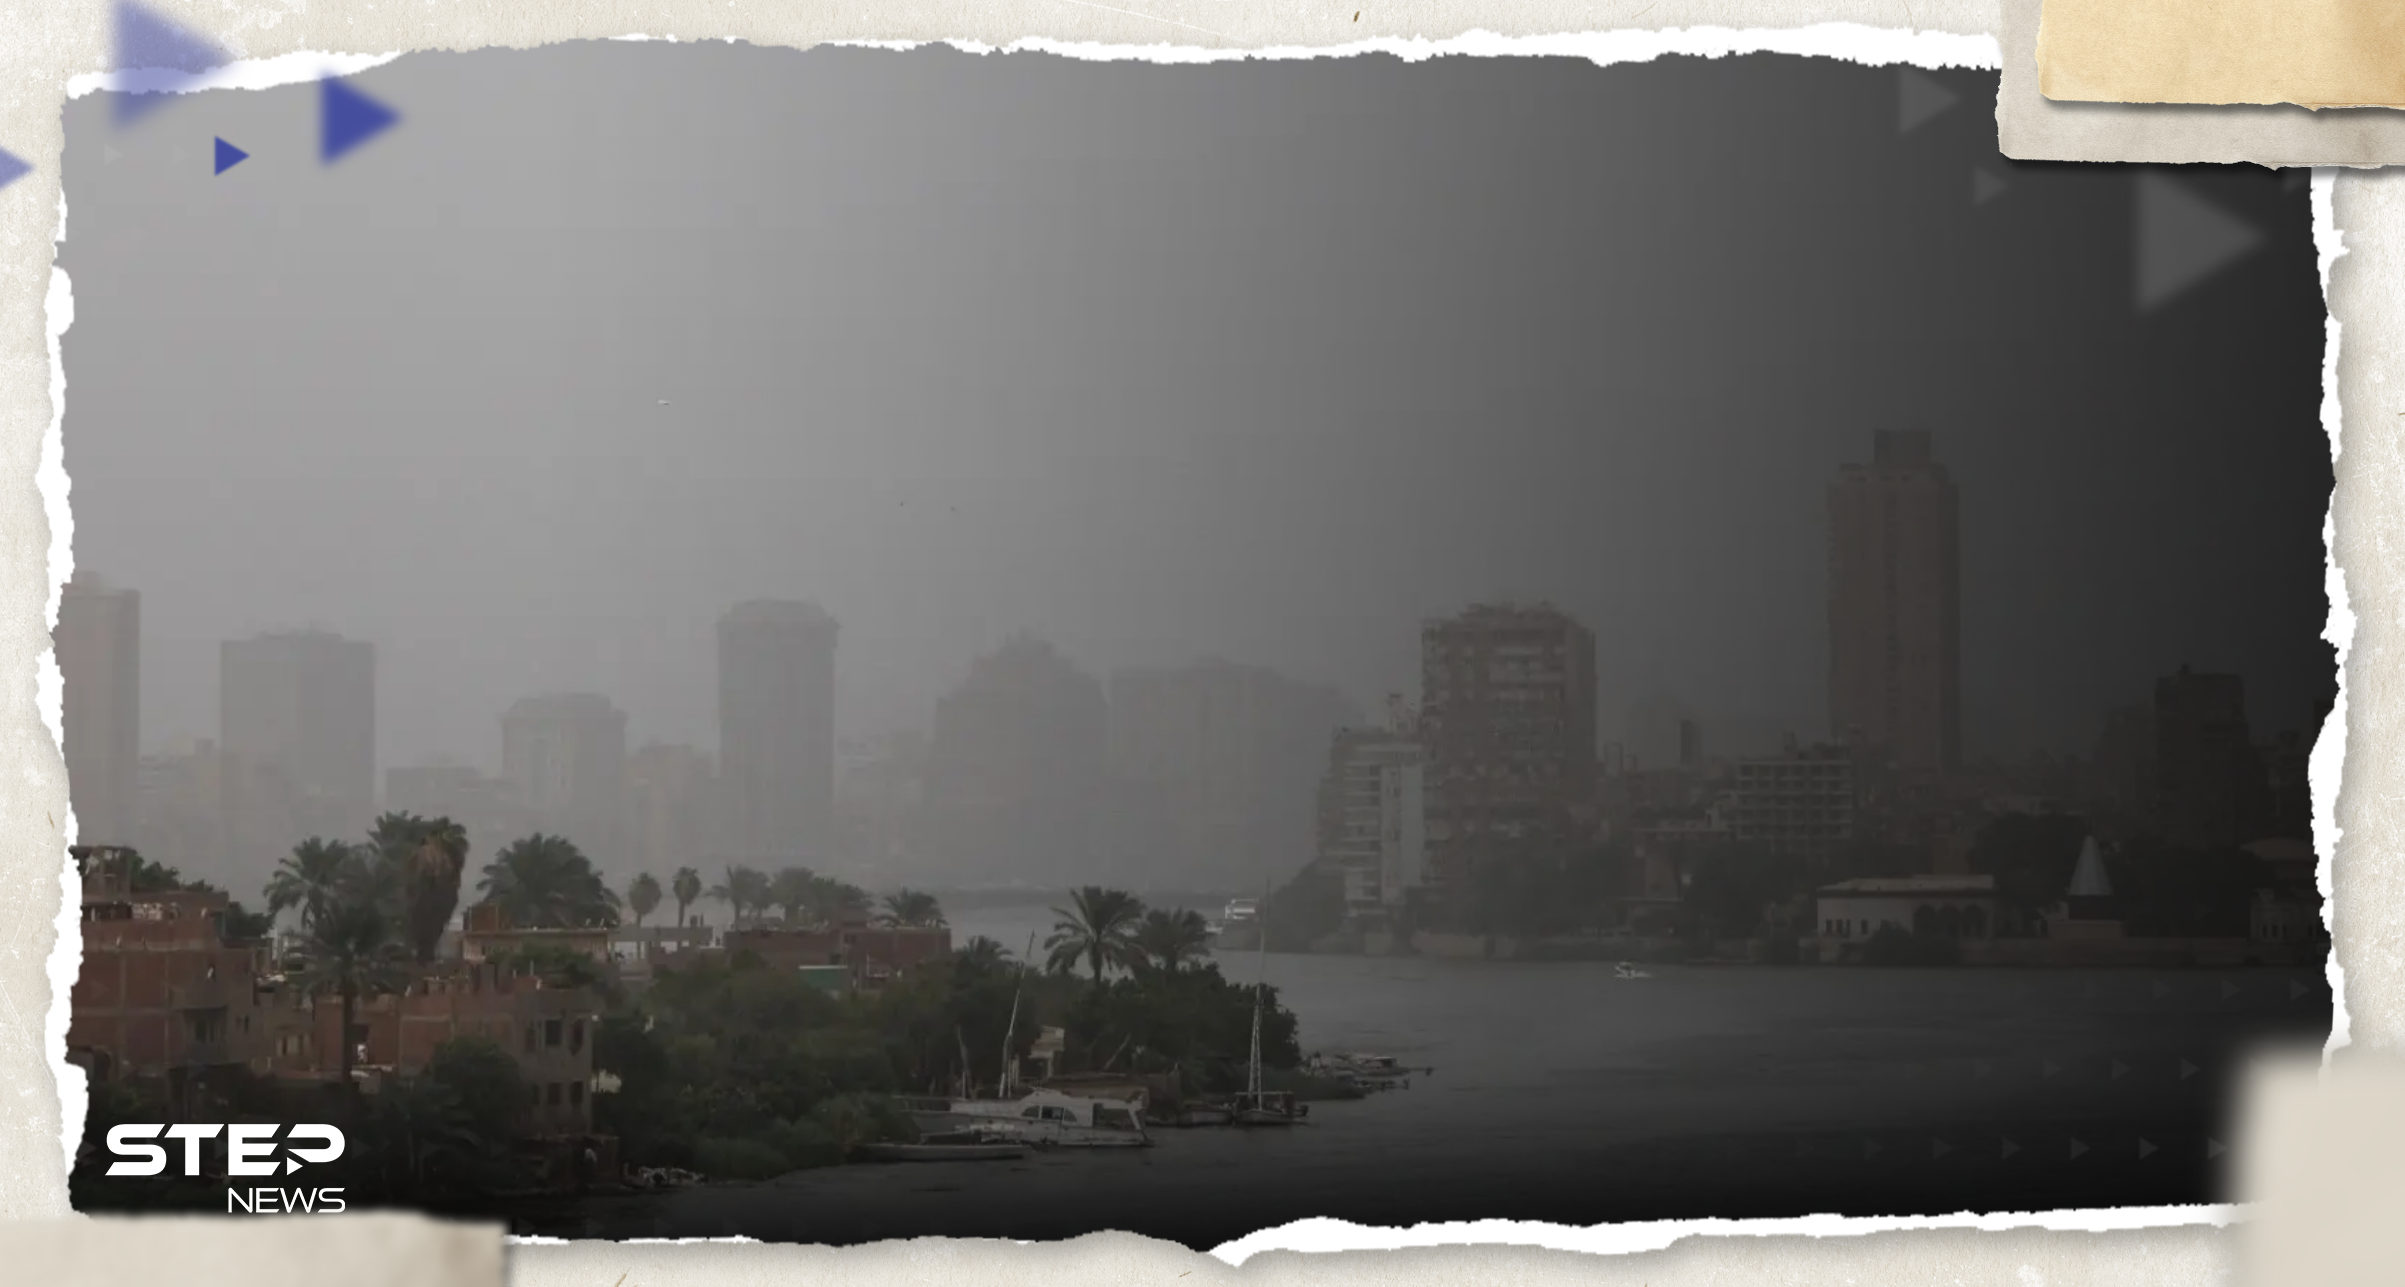 تحذير من انتشار رائحة غاز بأجواء الإسكندرية والسلطات المصرية تصدر بياناً